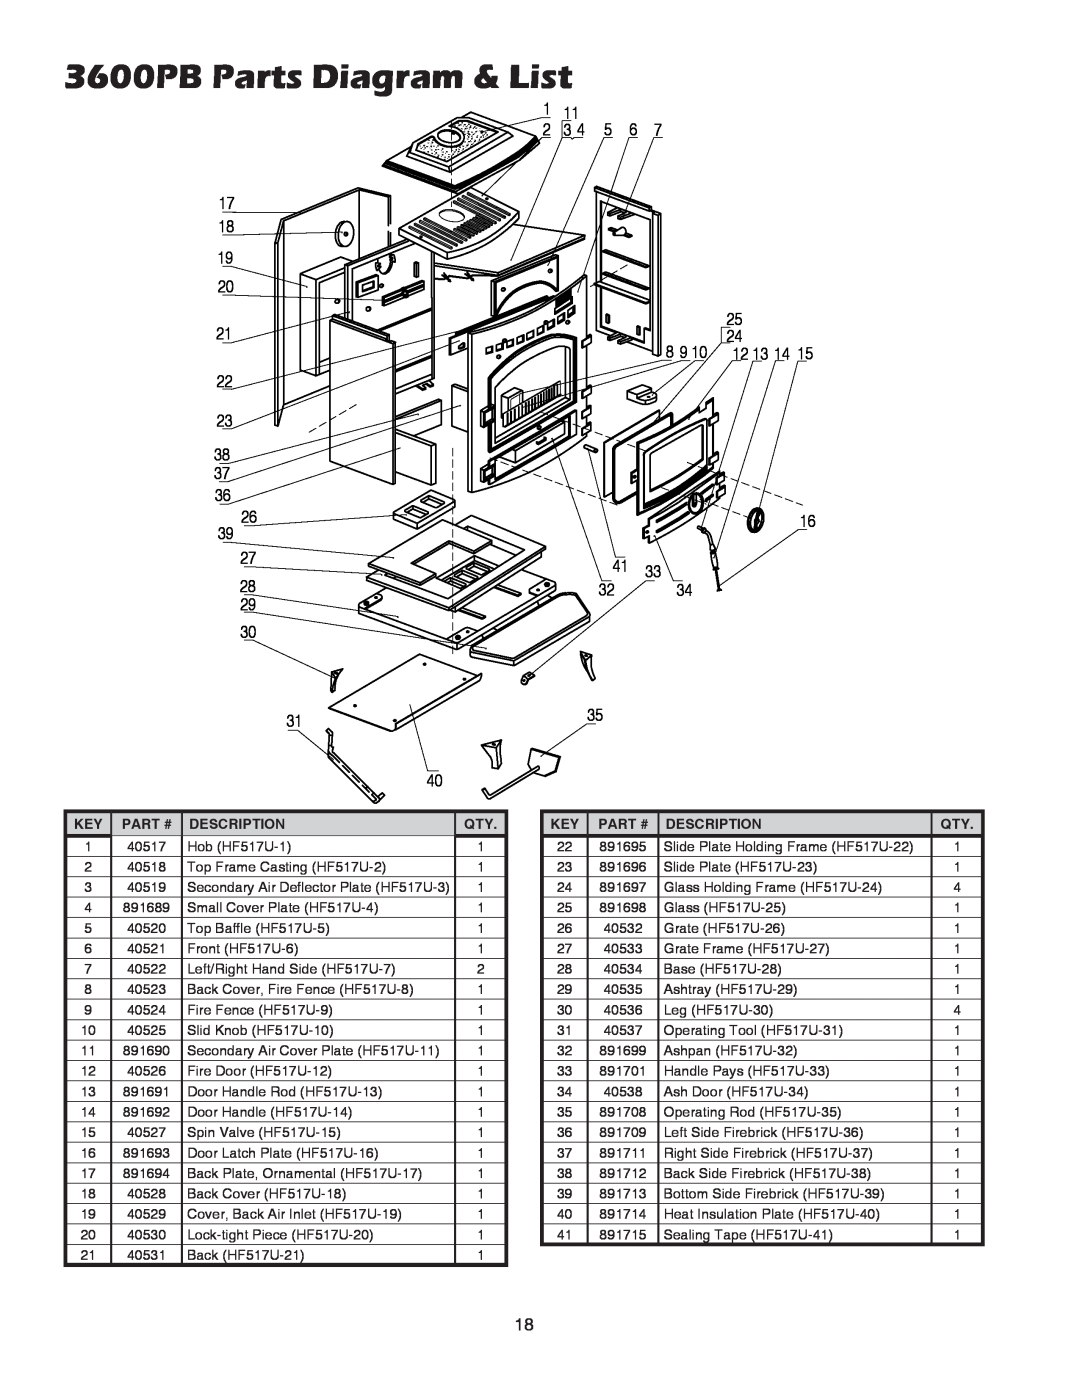 United States Stove 3800PB owner manual 3600PB Parts Diagram & List, Part #, Description 